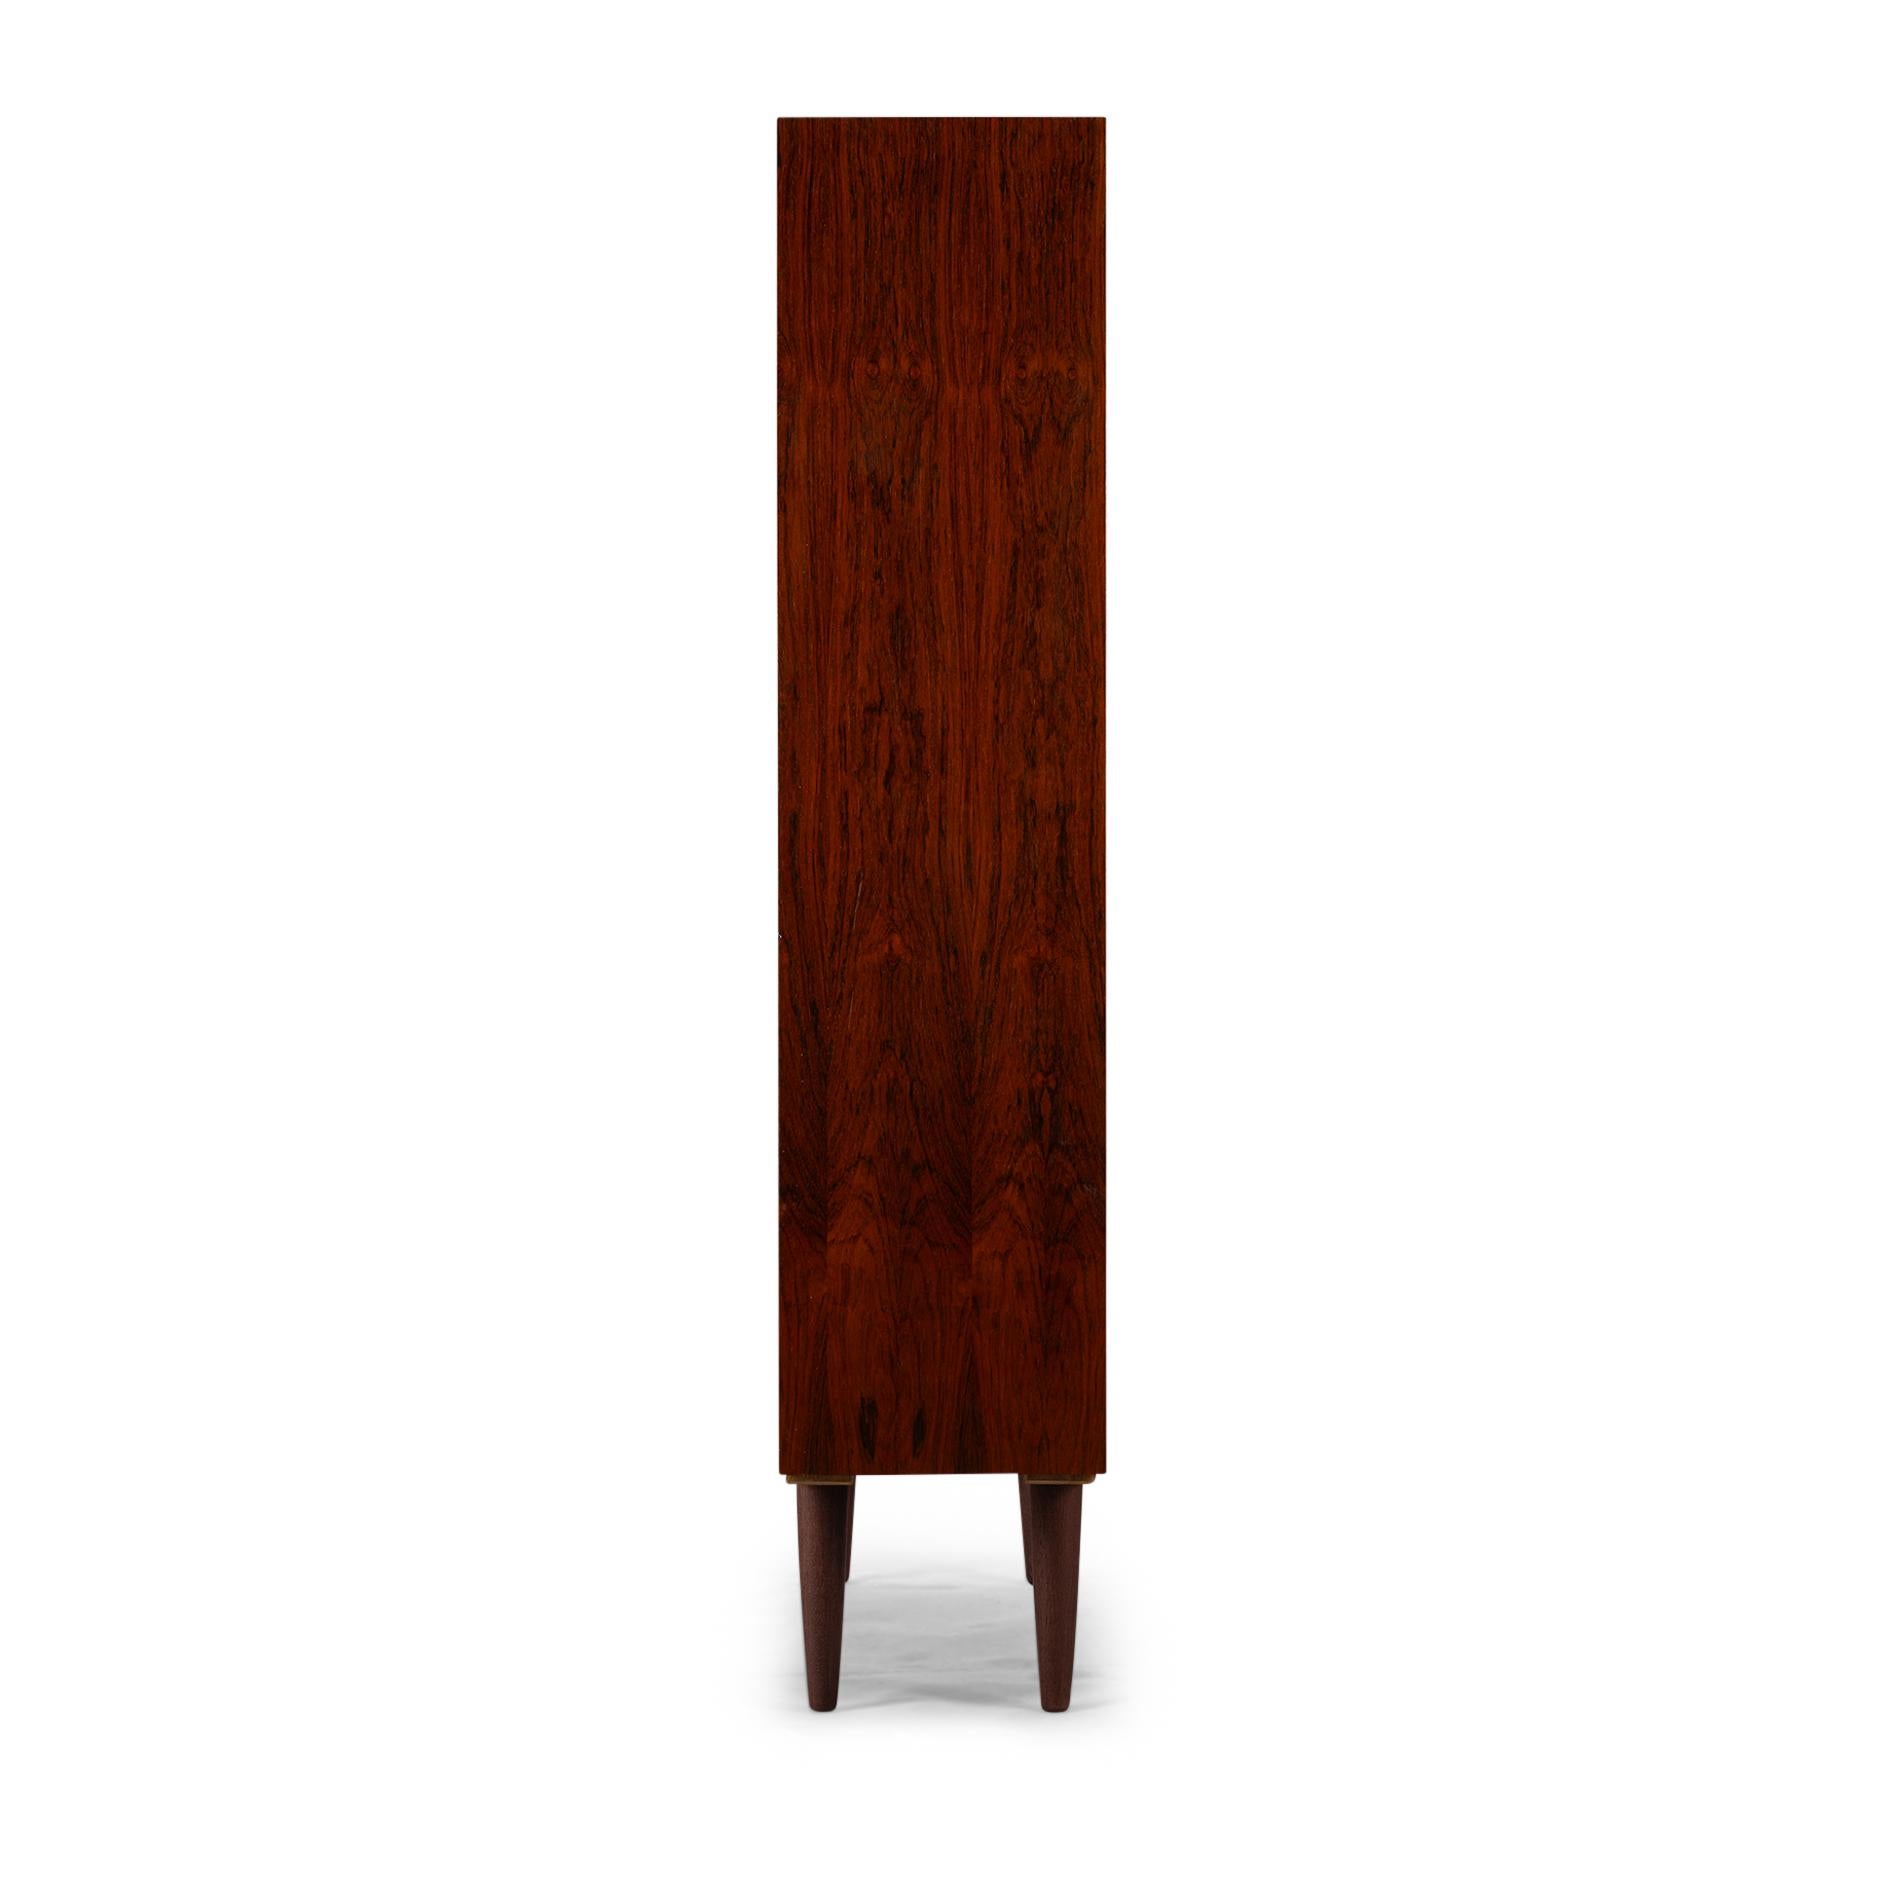 Design/One
Voici la bibliothèque Omann Jun Model 6 en bois de rose. La bibliothèque Omann Jun Model 6 perpétue fièrement l'héritage du design danois, réputé pour ses lignes épurées, son esthétique minimaliste et son savoir-faire exceptionnel.